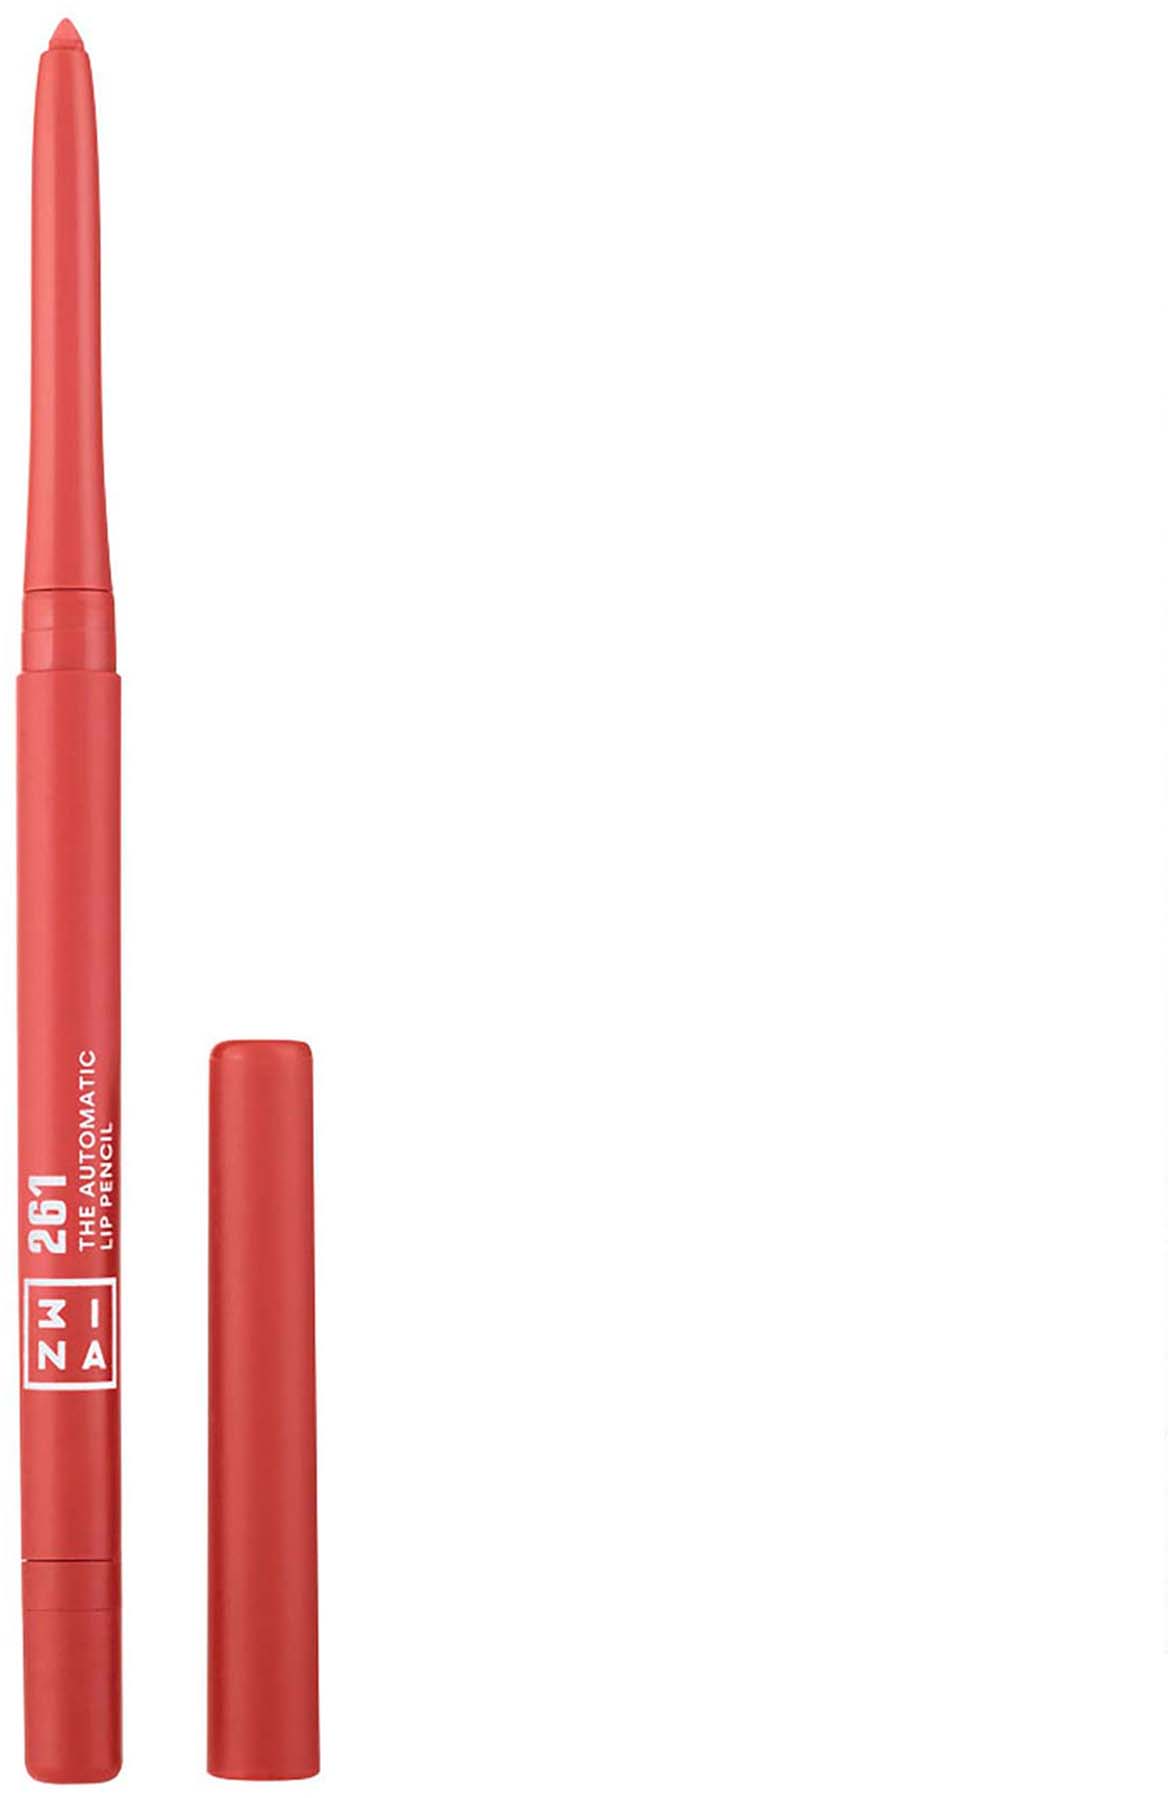 3INA Cosmetics The Automatic Lip Pencil 261, idealnie zdefiniowany kontur ust, wodoodporny, konturówka do ust, permanentna konturówka, bez parabenów, wegański, kosmetyk nietestowany na zwierzętach, 7